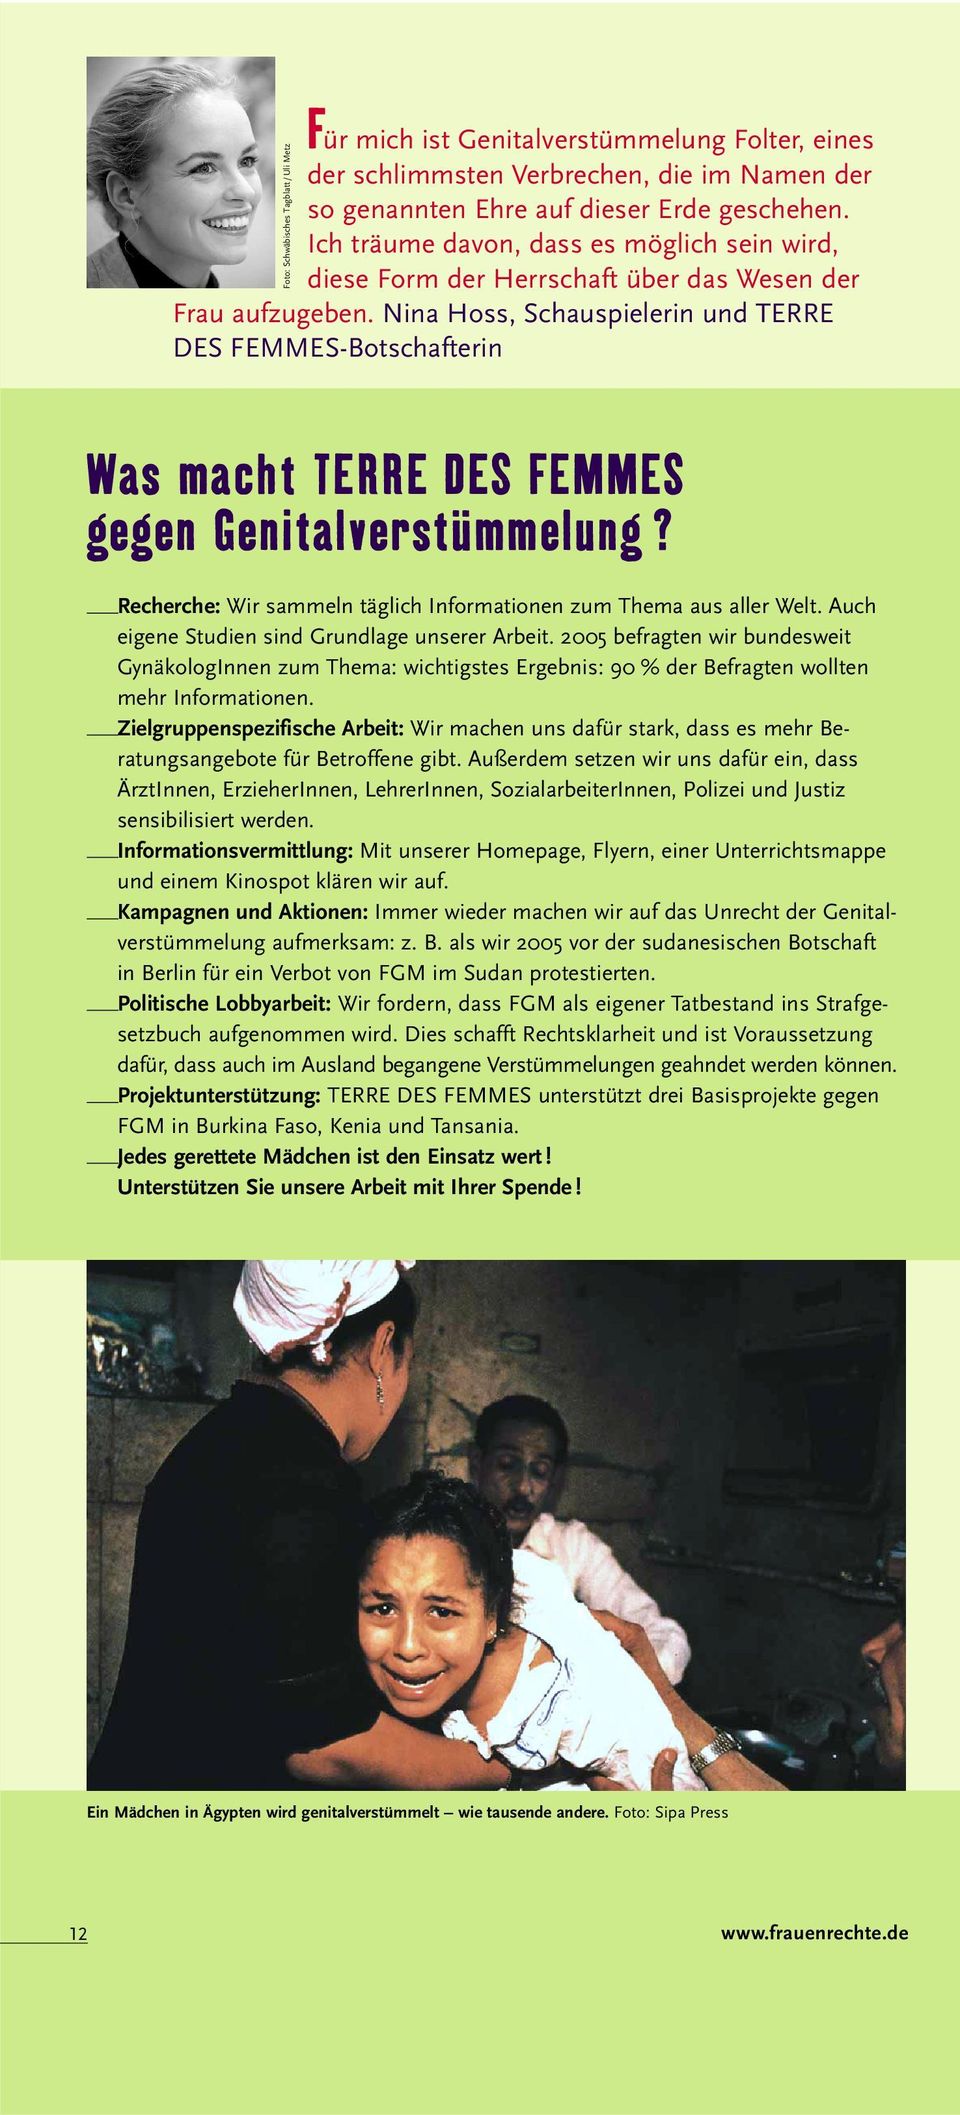 Nina Hoss, Schauspielerin und TERRE DES FEMMES-Botschafterin Foto: Schwäbisches Tagblatt / Uli Metz Was macht TERRE DES FEMMES gegen Genitalverstümmelung?